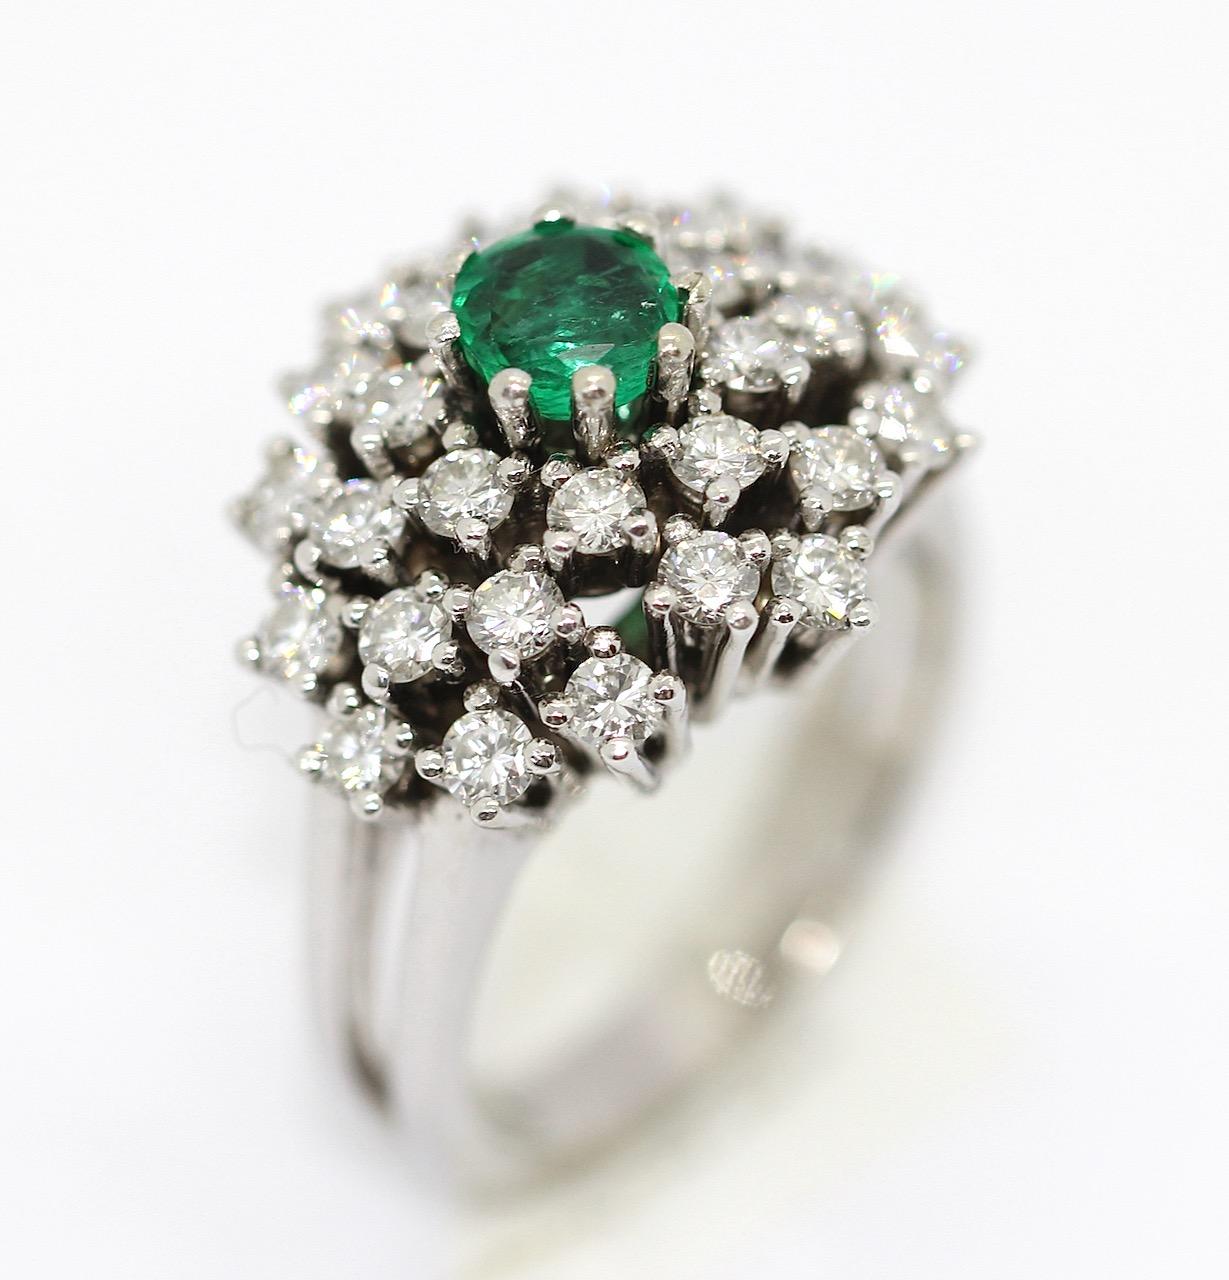 Charmanter Ring aus Weißgold mit Diamanten und Smaragd. 14 Karat.

Der Ring ist mit zahlreichen Diamanten von sehr guter Qualität und einem Smaragd besetzt.
Sehr starker, natürlicher Glanz der Diamanten.

Inklusive Echtheitszertifikat.